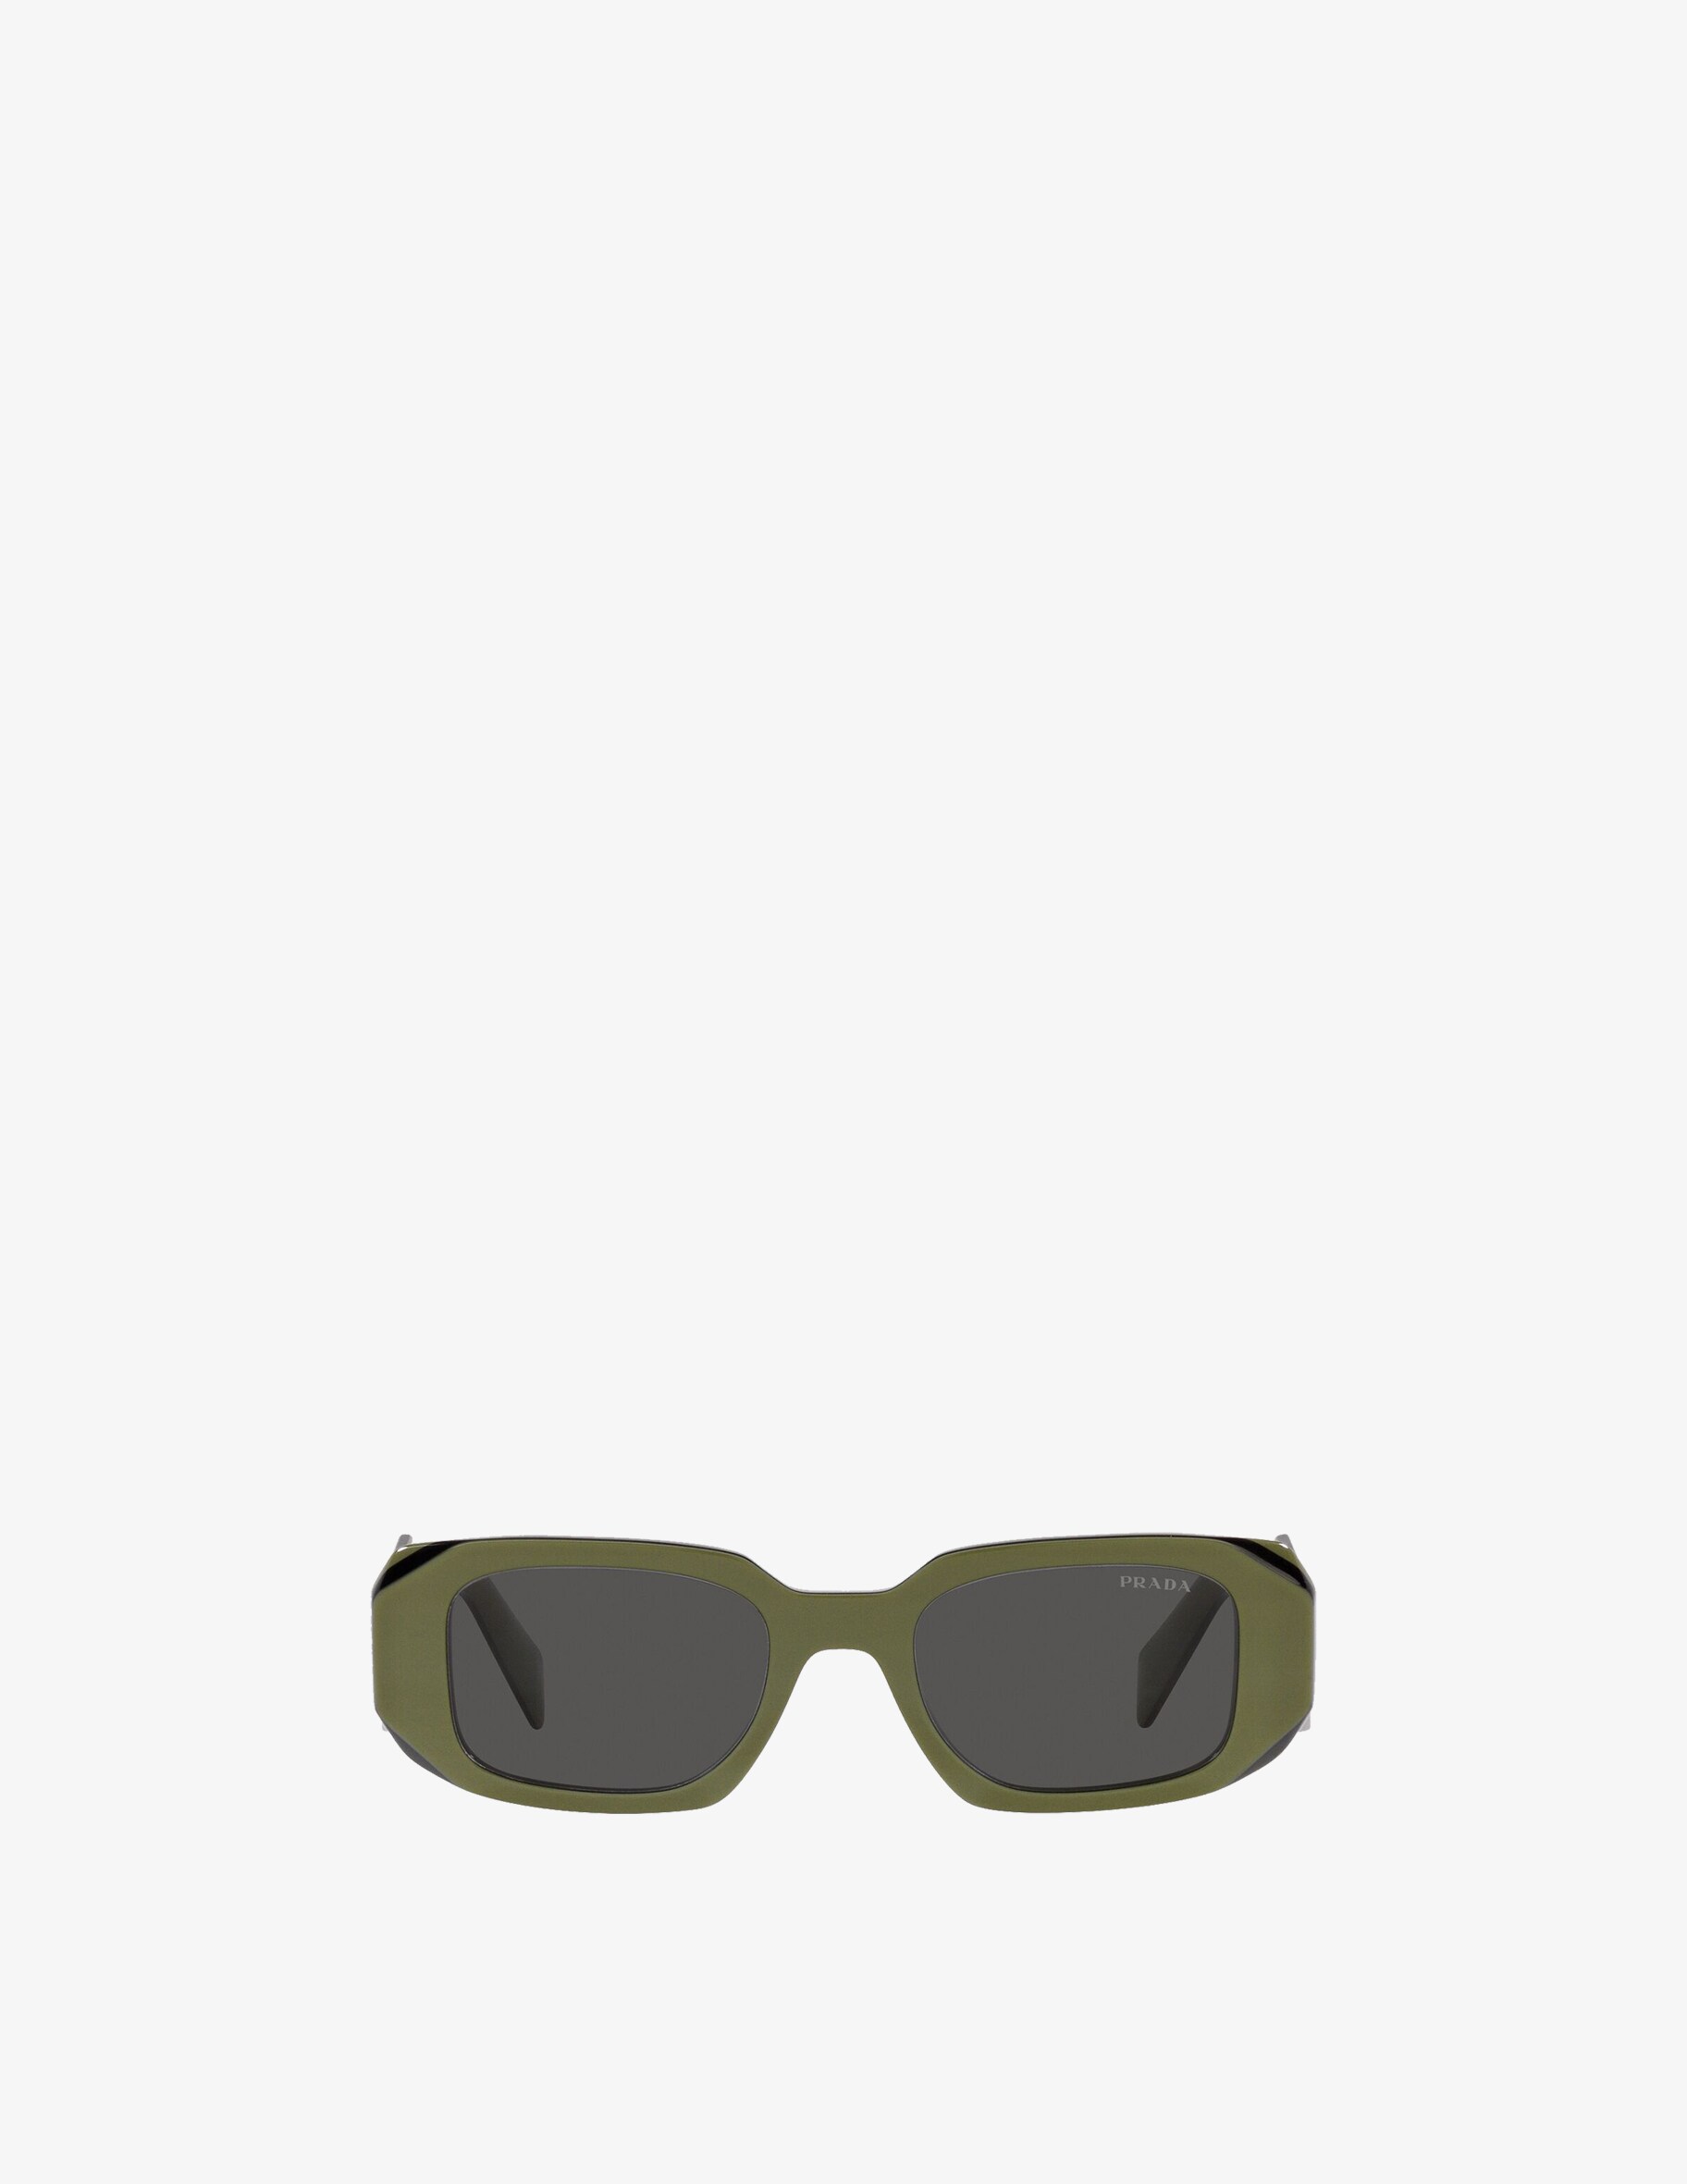 Солнцезащитные очки PR 17WS в квадратной оправе Prada, цвет Verde